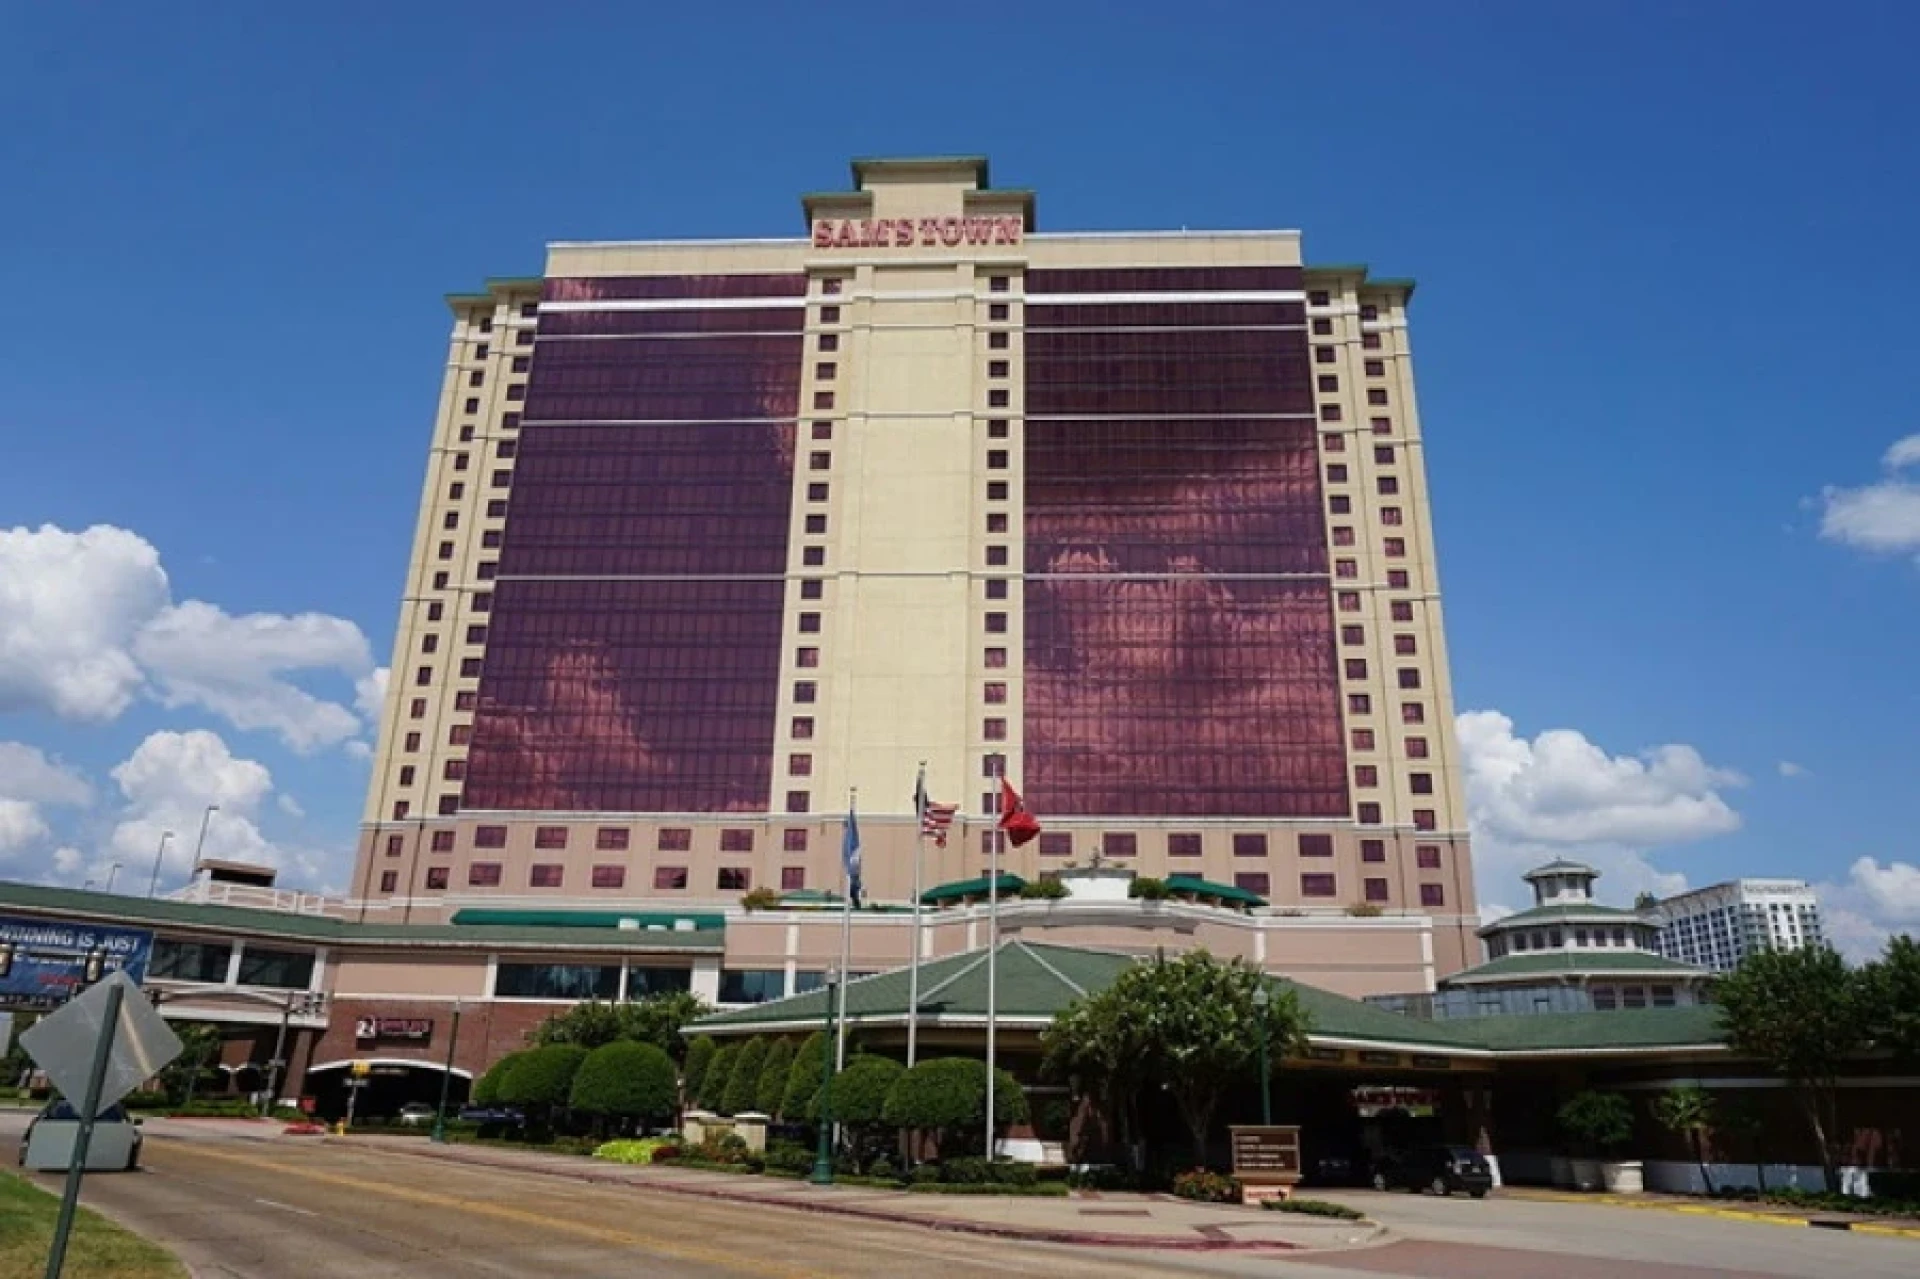 Sam's Town Hotel & Casino Shreveport